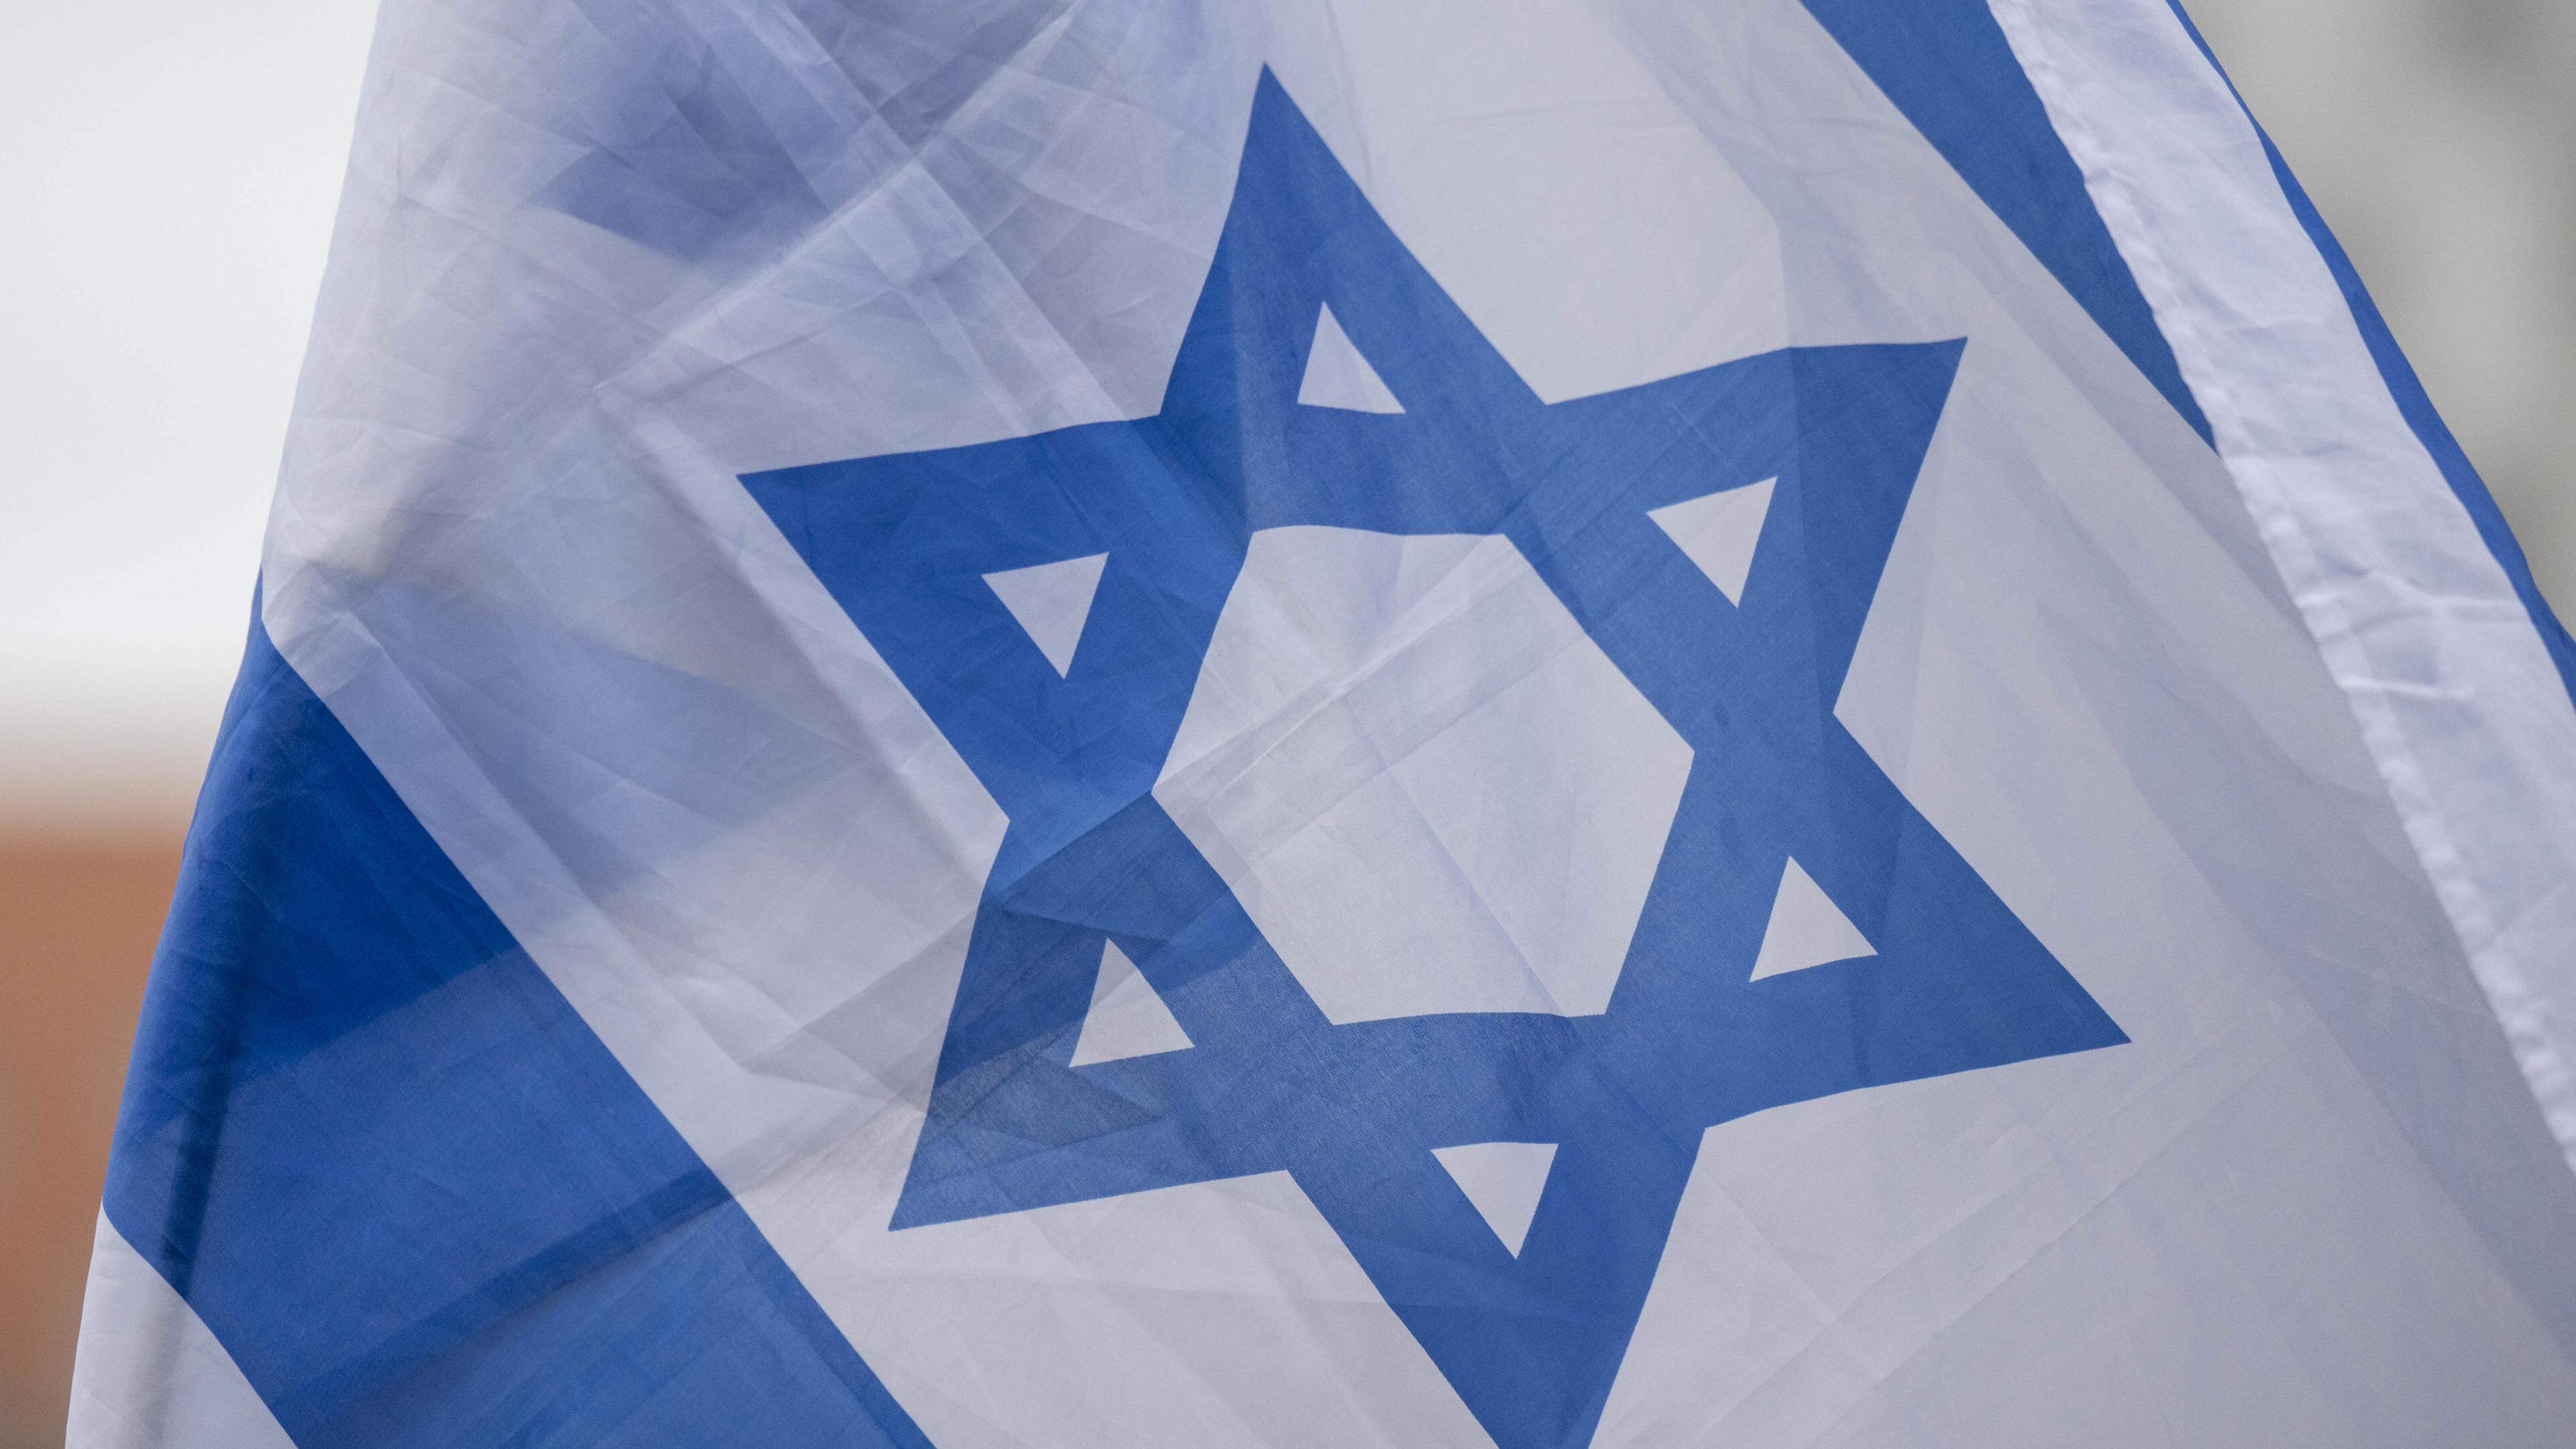 Antisemitische Attacke in Stade: Unbekannte wollen Israel-Flagge